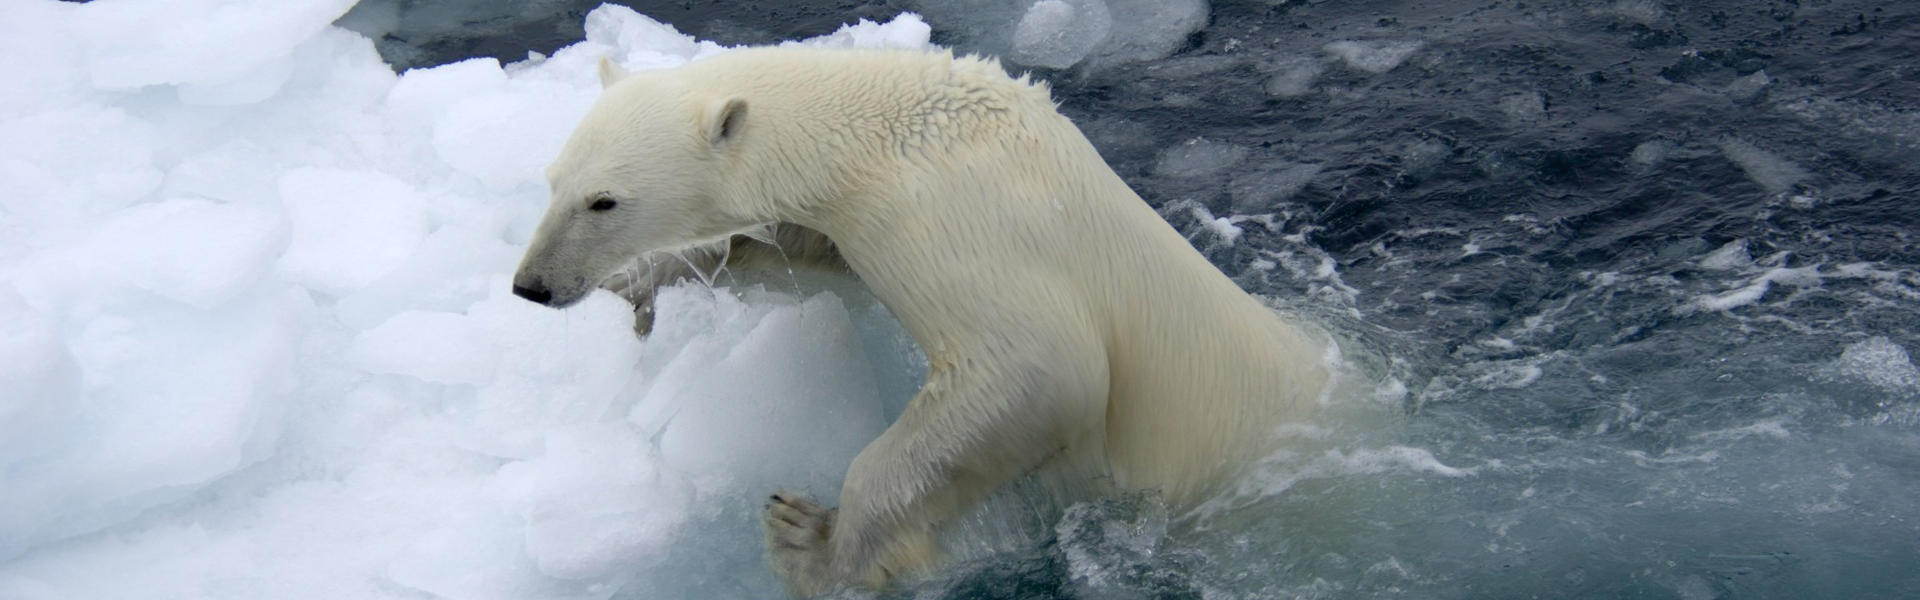 Artsdatabanken vurderer isbjørnen for Svalbard som sårbår. Prognoser om oppvarming av arktiske områder indikerer drastisk tap av isbjørnens habitat (havis)